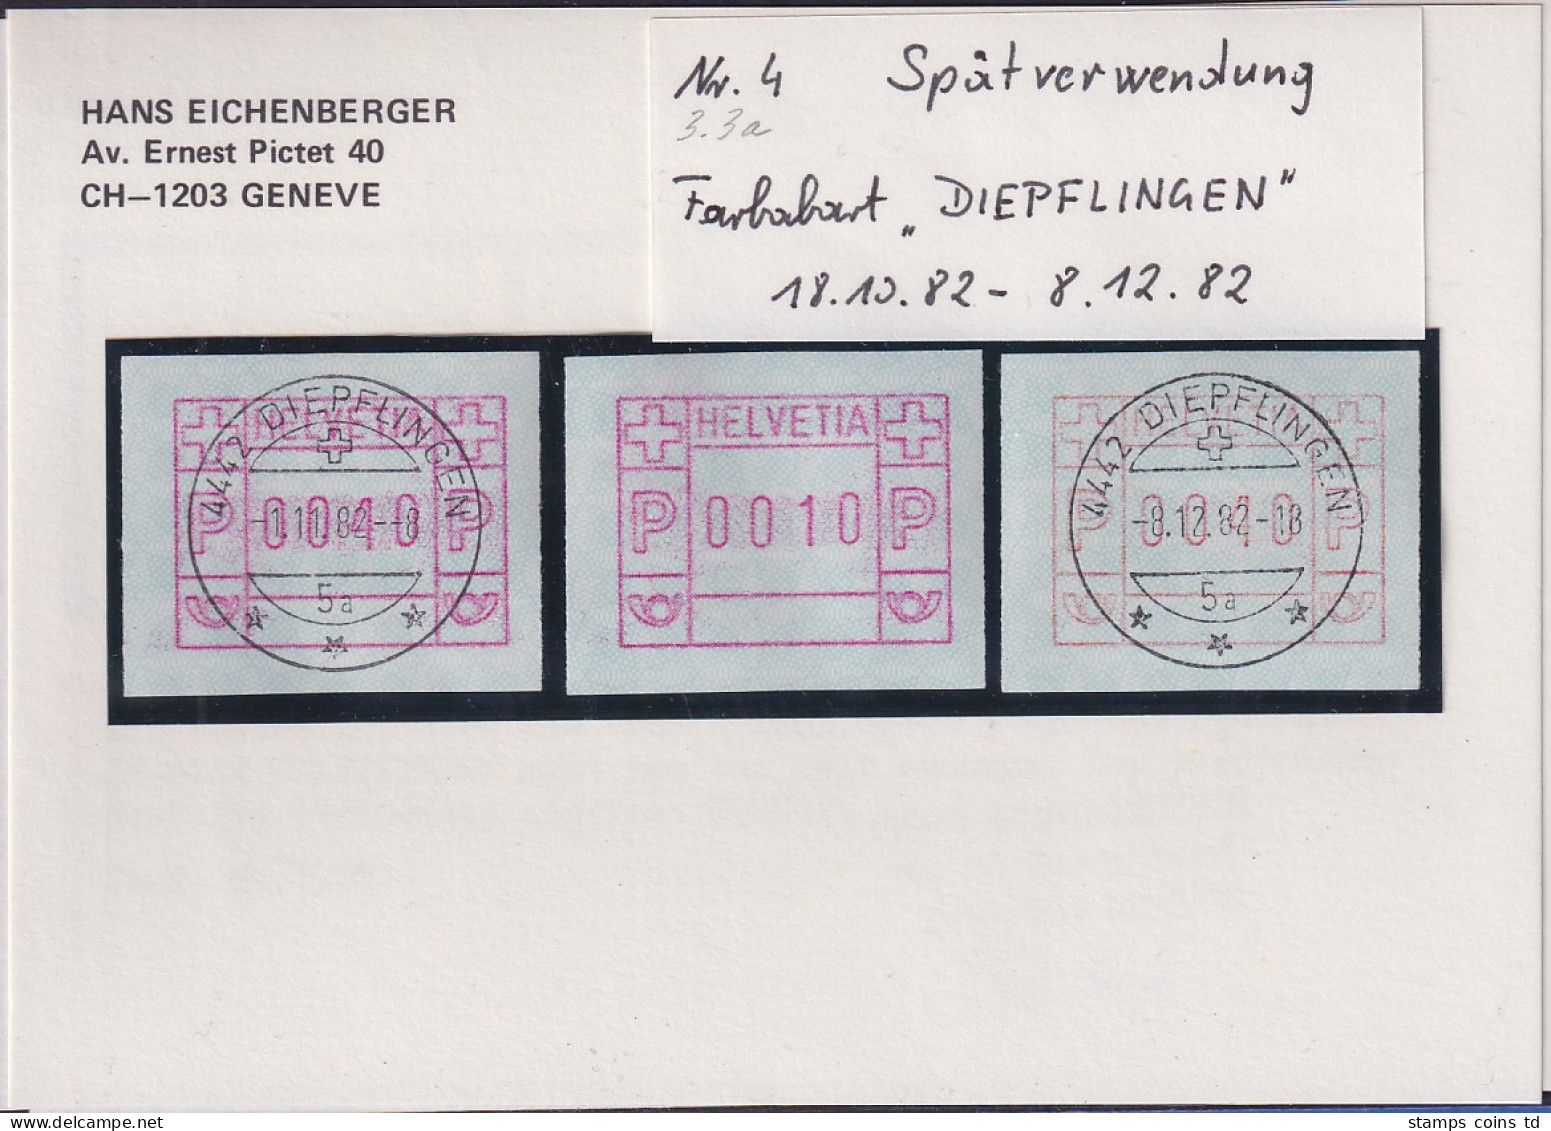 Schweiz FRAMA-ATM Mi-Nr. 3.3a Spätverwendung DIEPFLINGEN 18.10. Bis 8.12. 82  - Automatenzegels